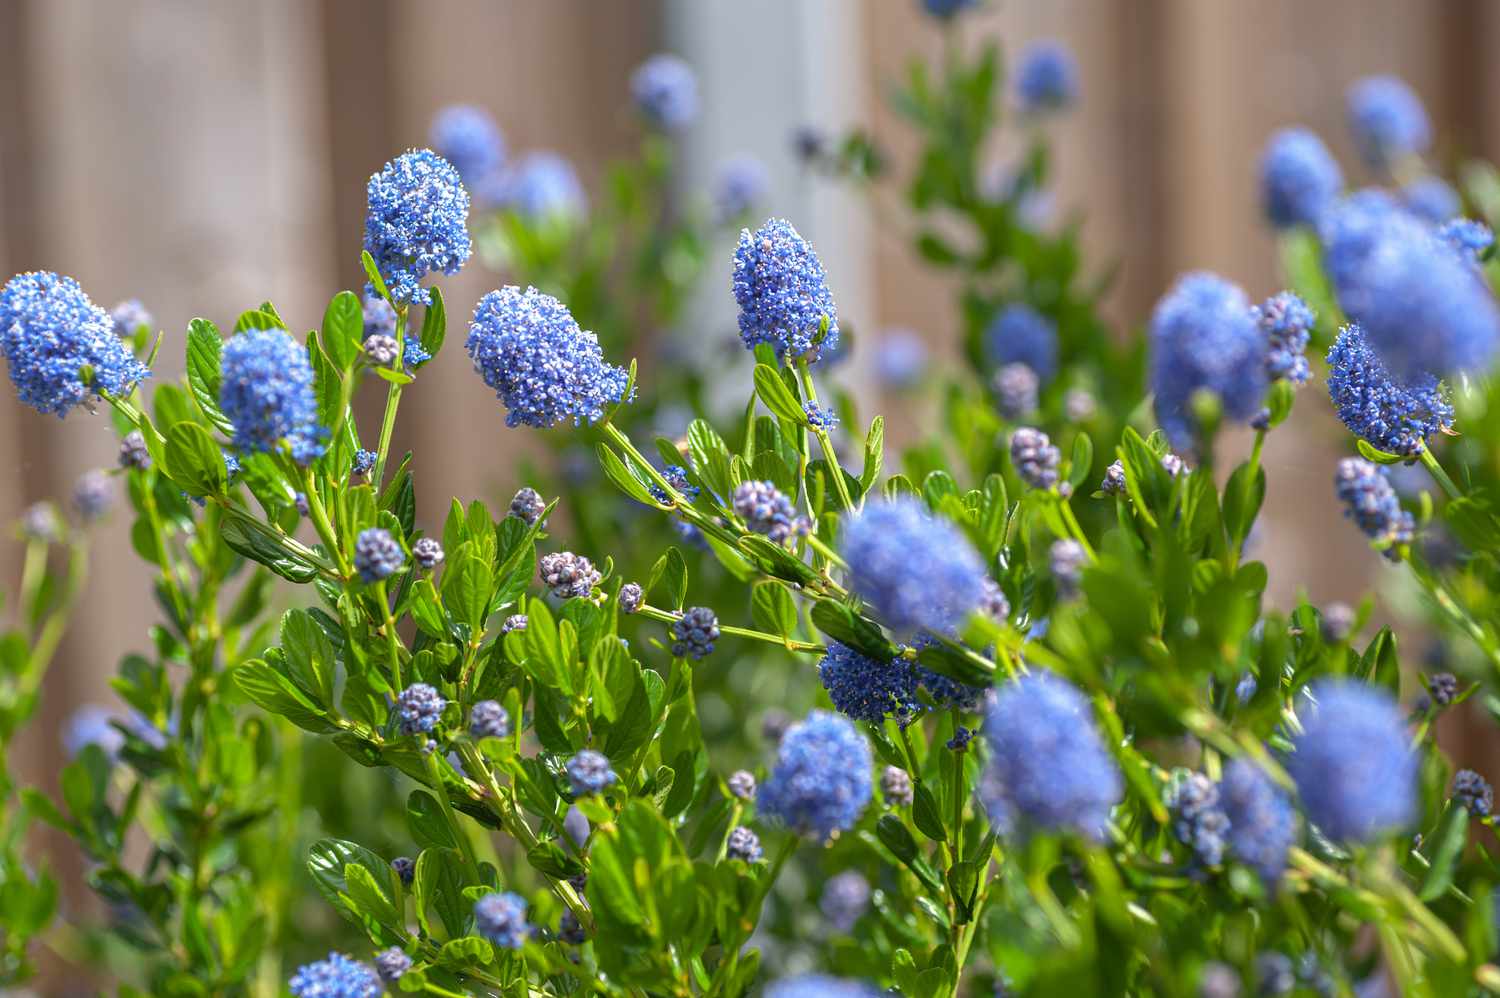 Blau blühende Ceanothus-Strauchzweige mit grünen, eiförmigen Blättern und winzigen blauen Blütenbüscheln und Knospen an dünnen Stängeln in Nahaufnahme 